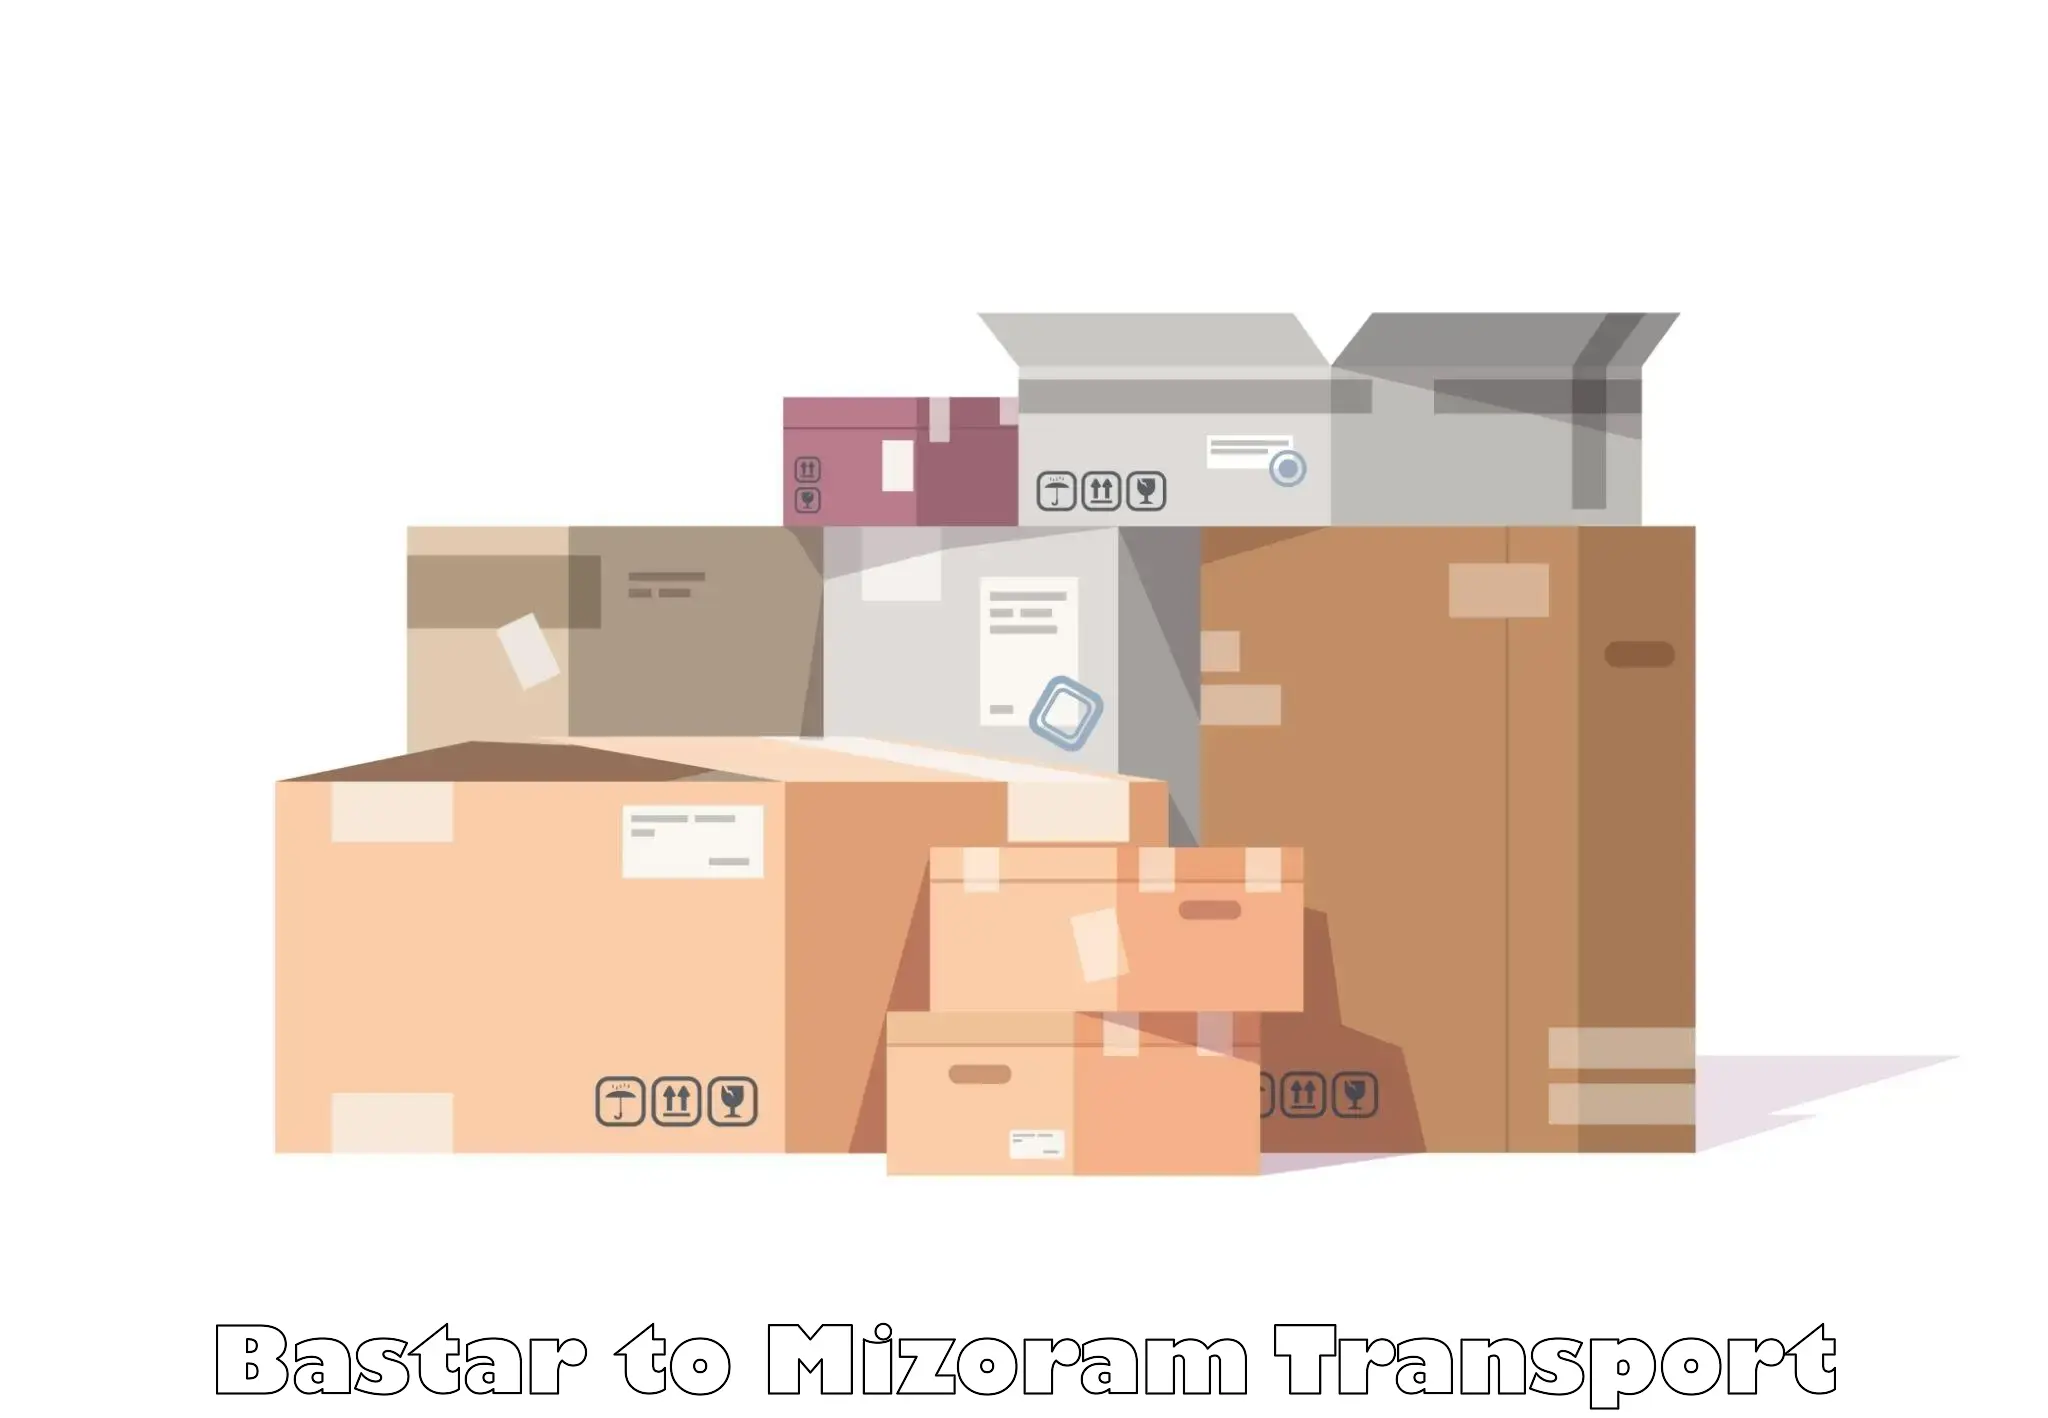 Cargo transport services Bastar to Khawzawl